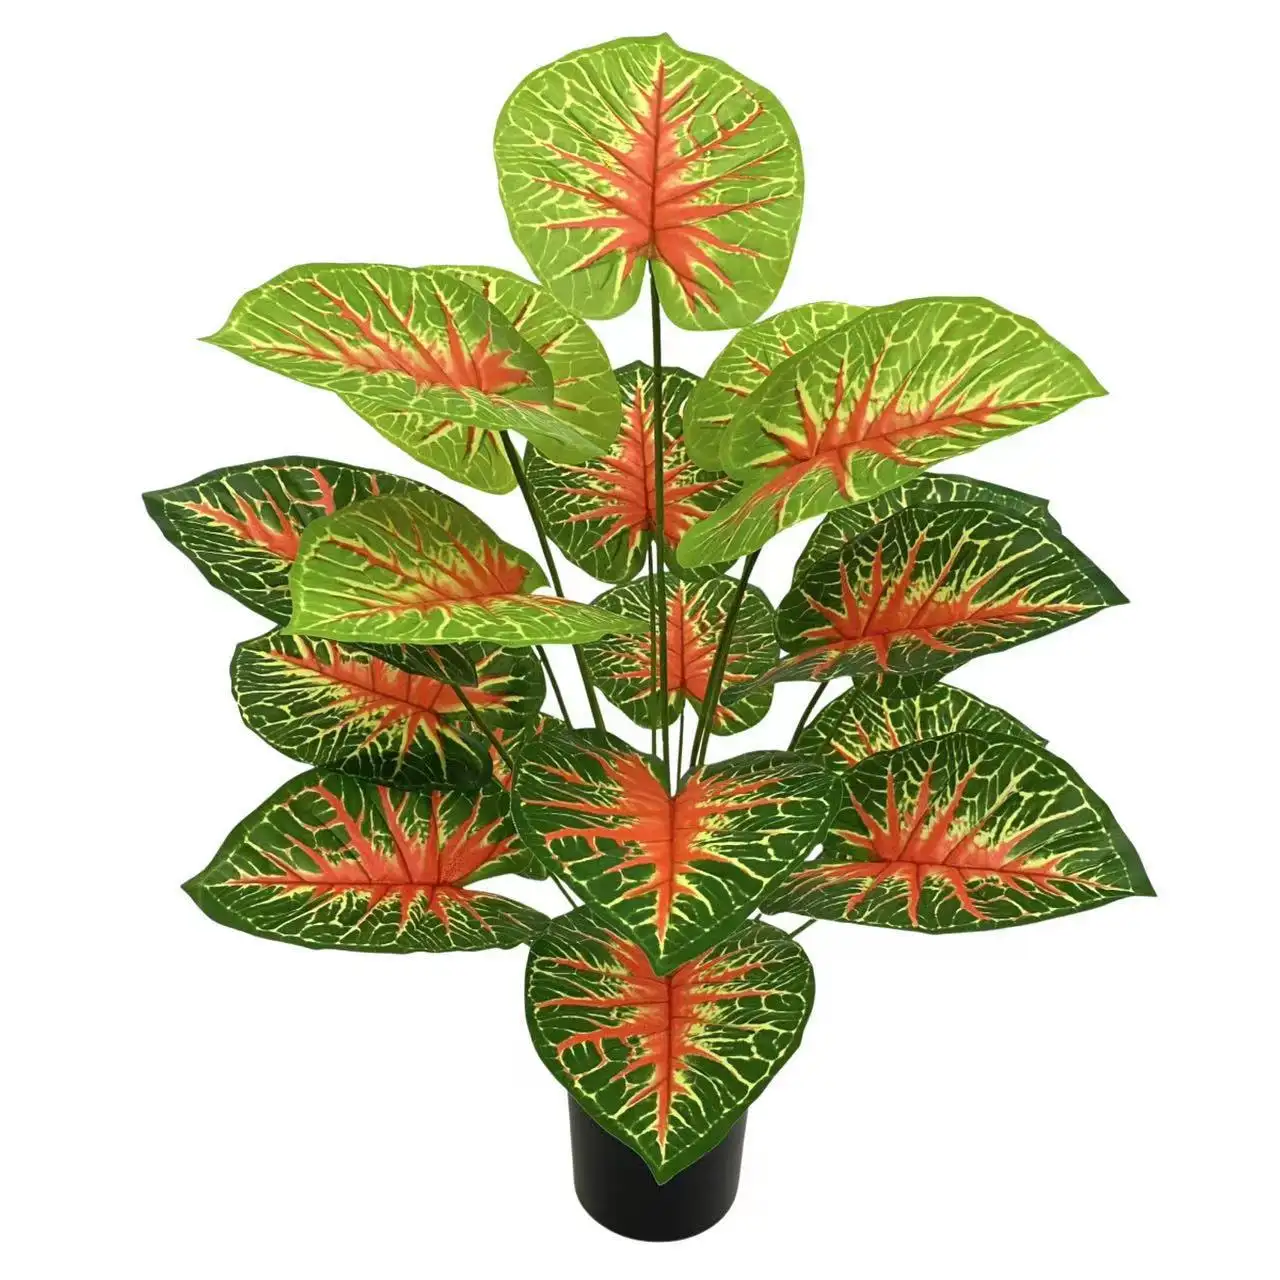 18 листьев, искусственная зелень, бонсай, вечнозеленое искусственное зеленое дерево без горшка, домашний декор